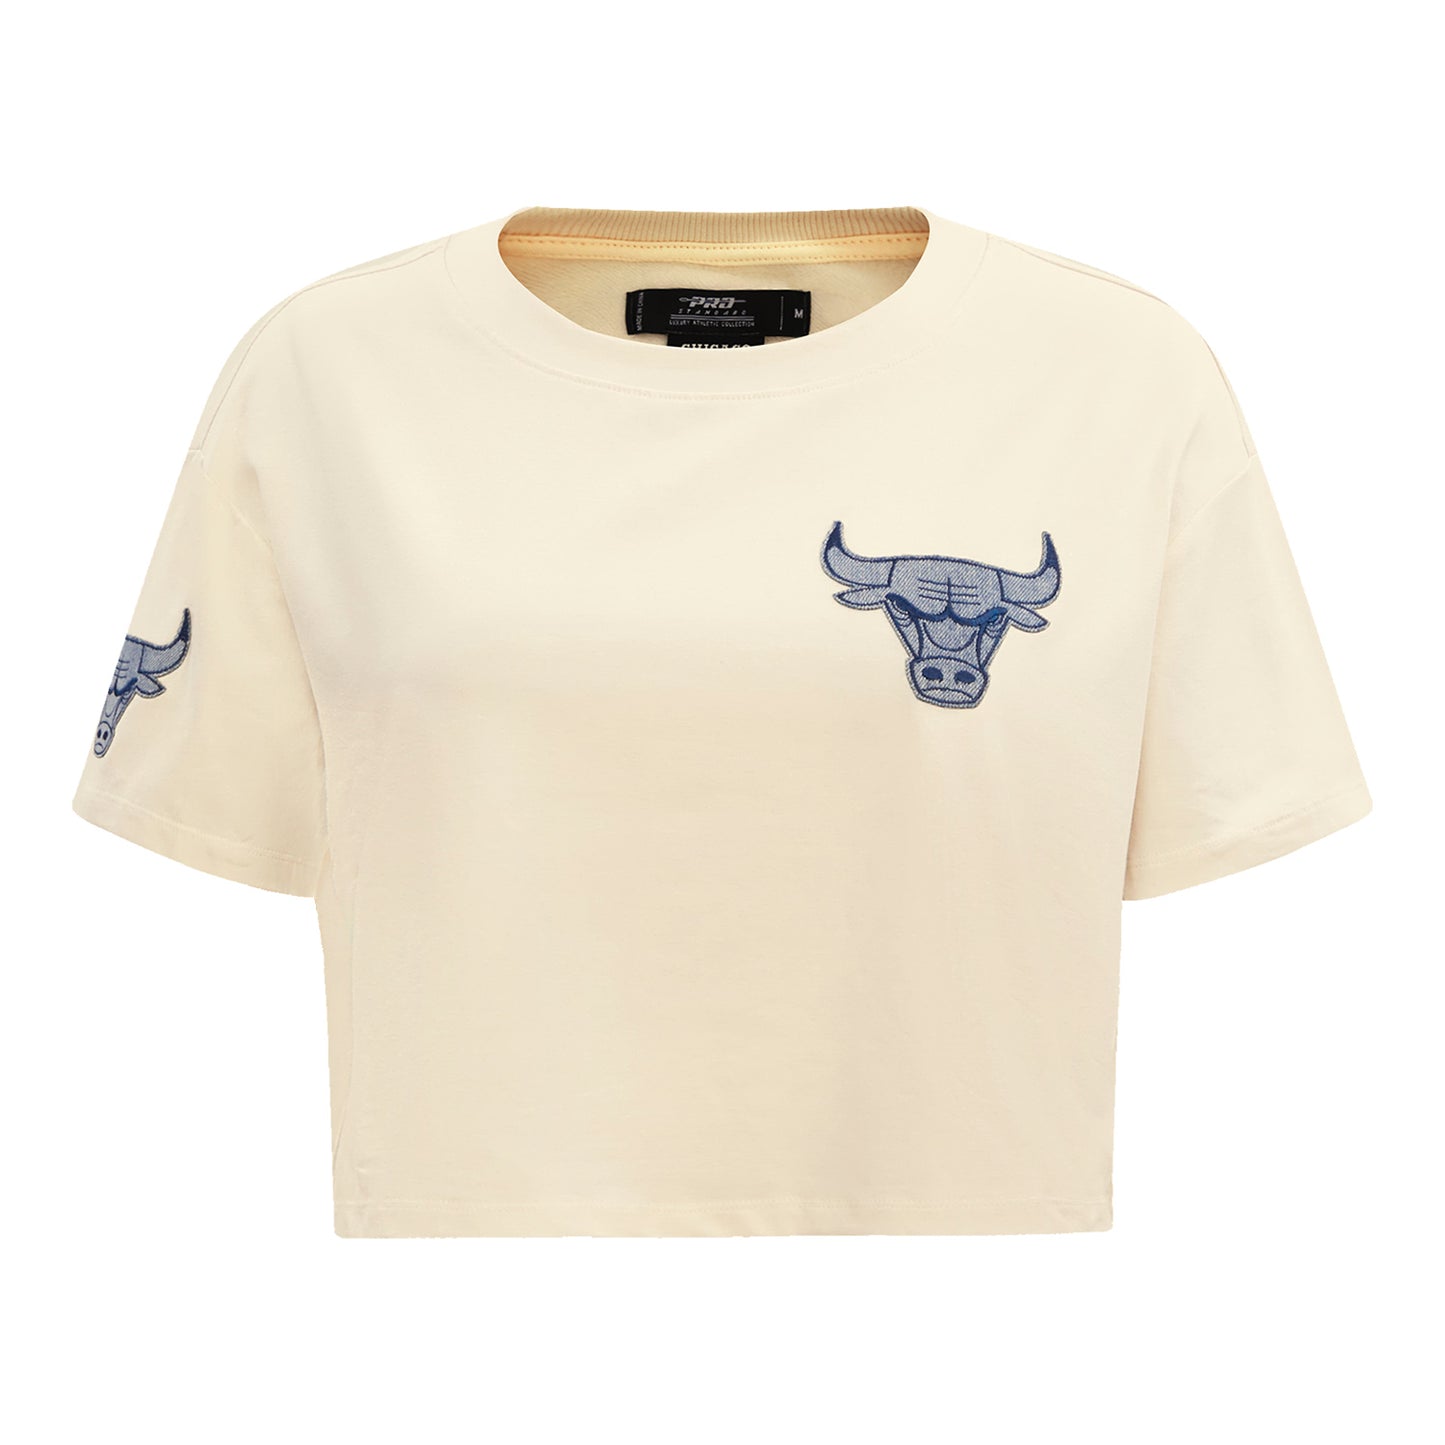 Pro Standard Men's Chicago Bulls Off White T-Shirt